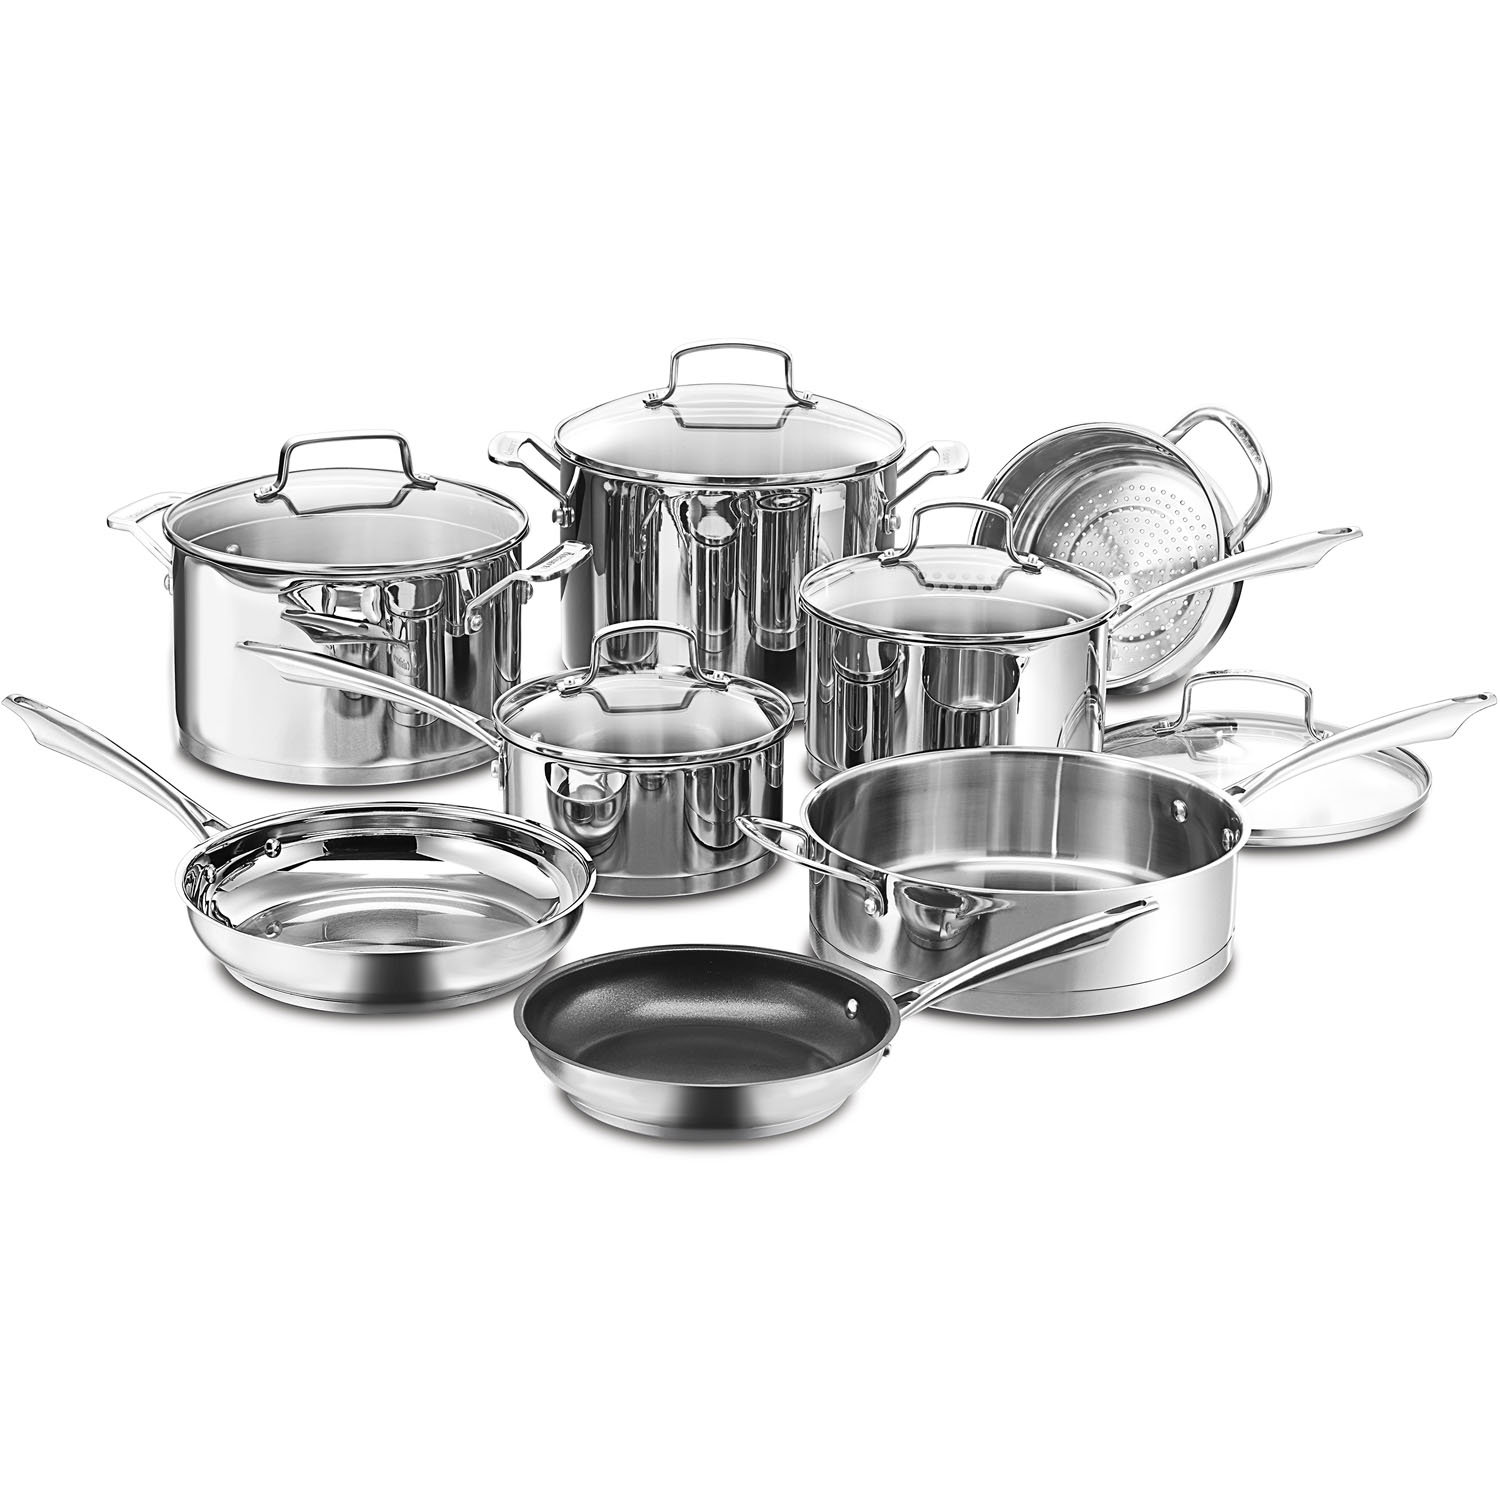 https://assets.wfcdn.com/im/59910610/compr-r85/3635/36352012/cuisinart-professional-series-13-piece-stainless-steel-cookware-set.jpg